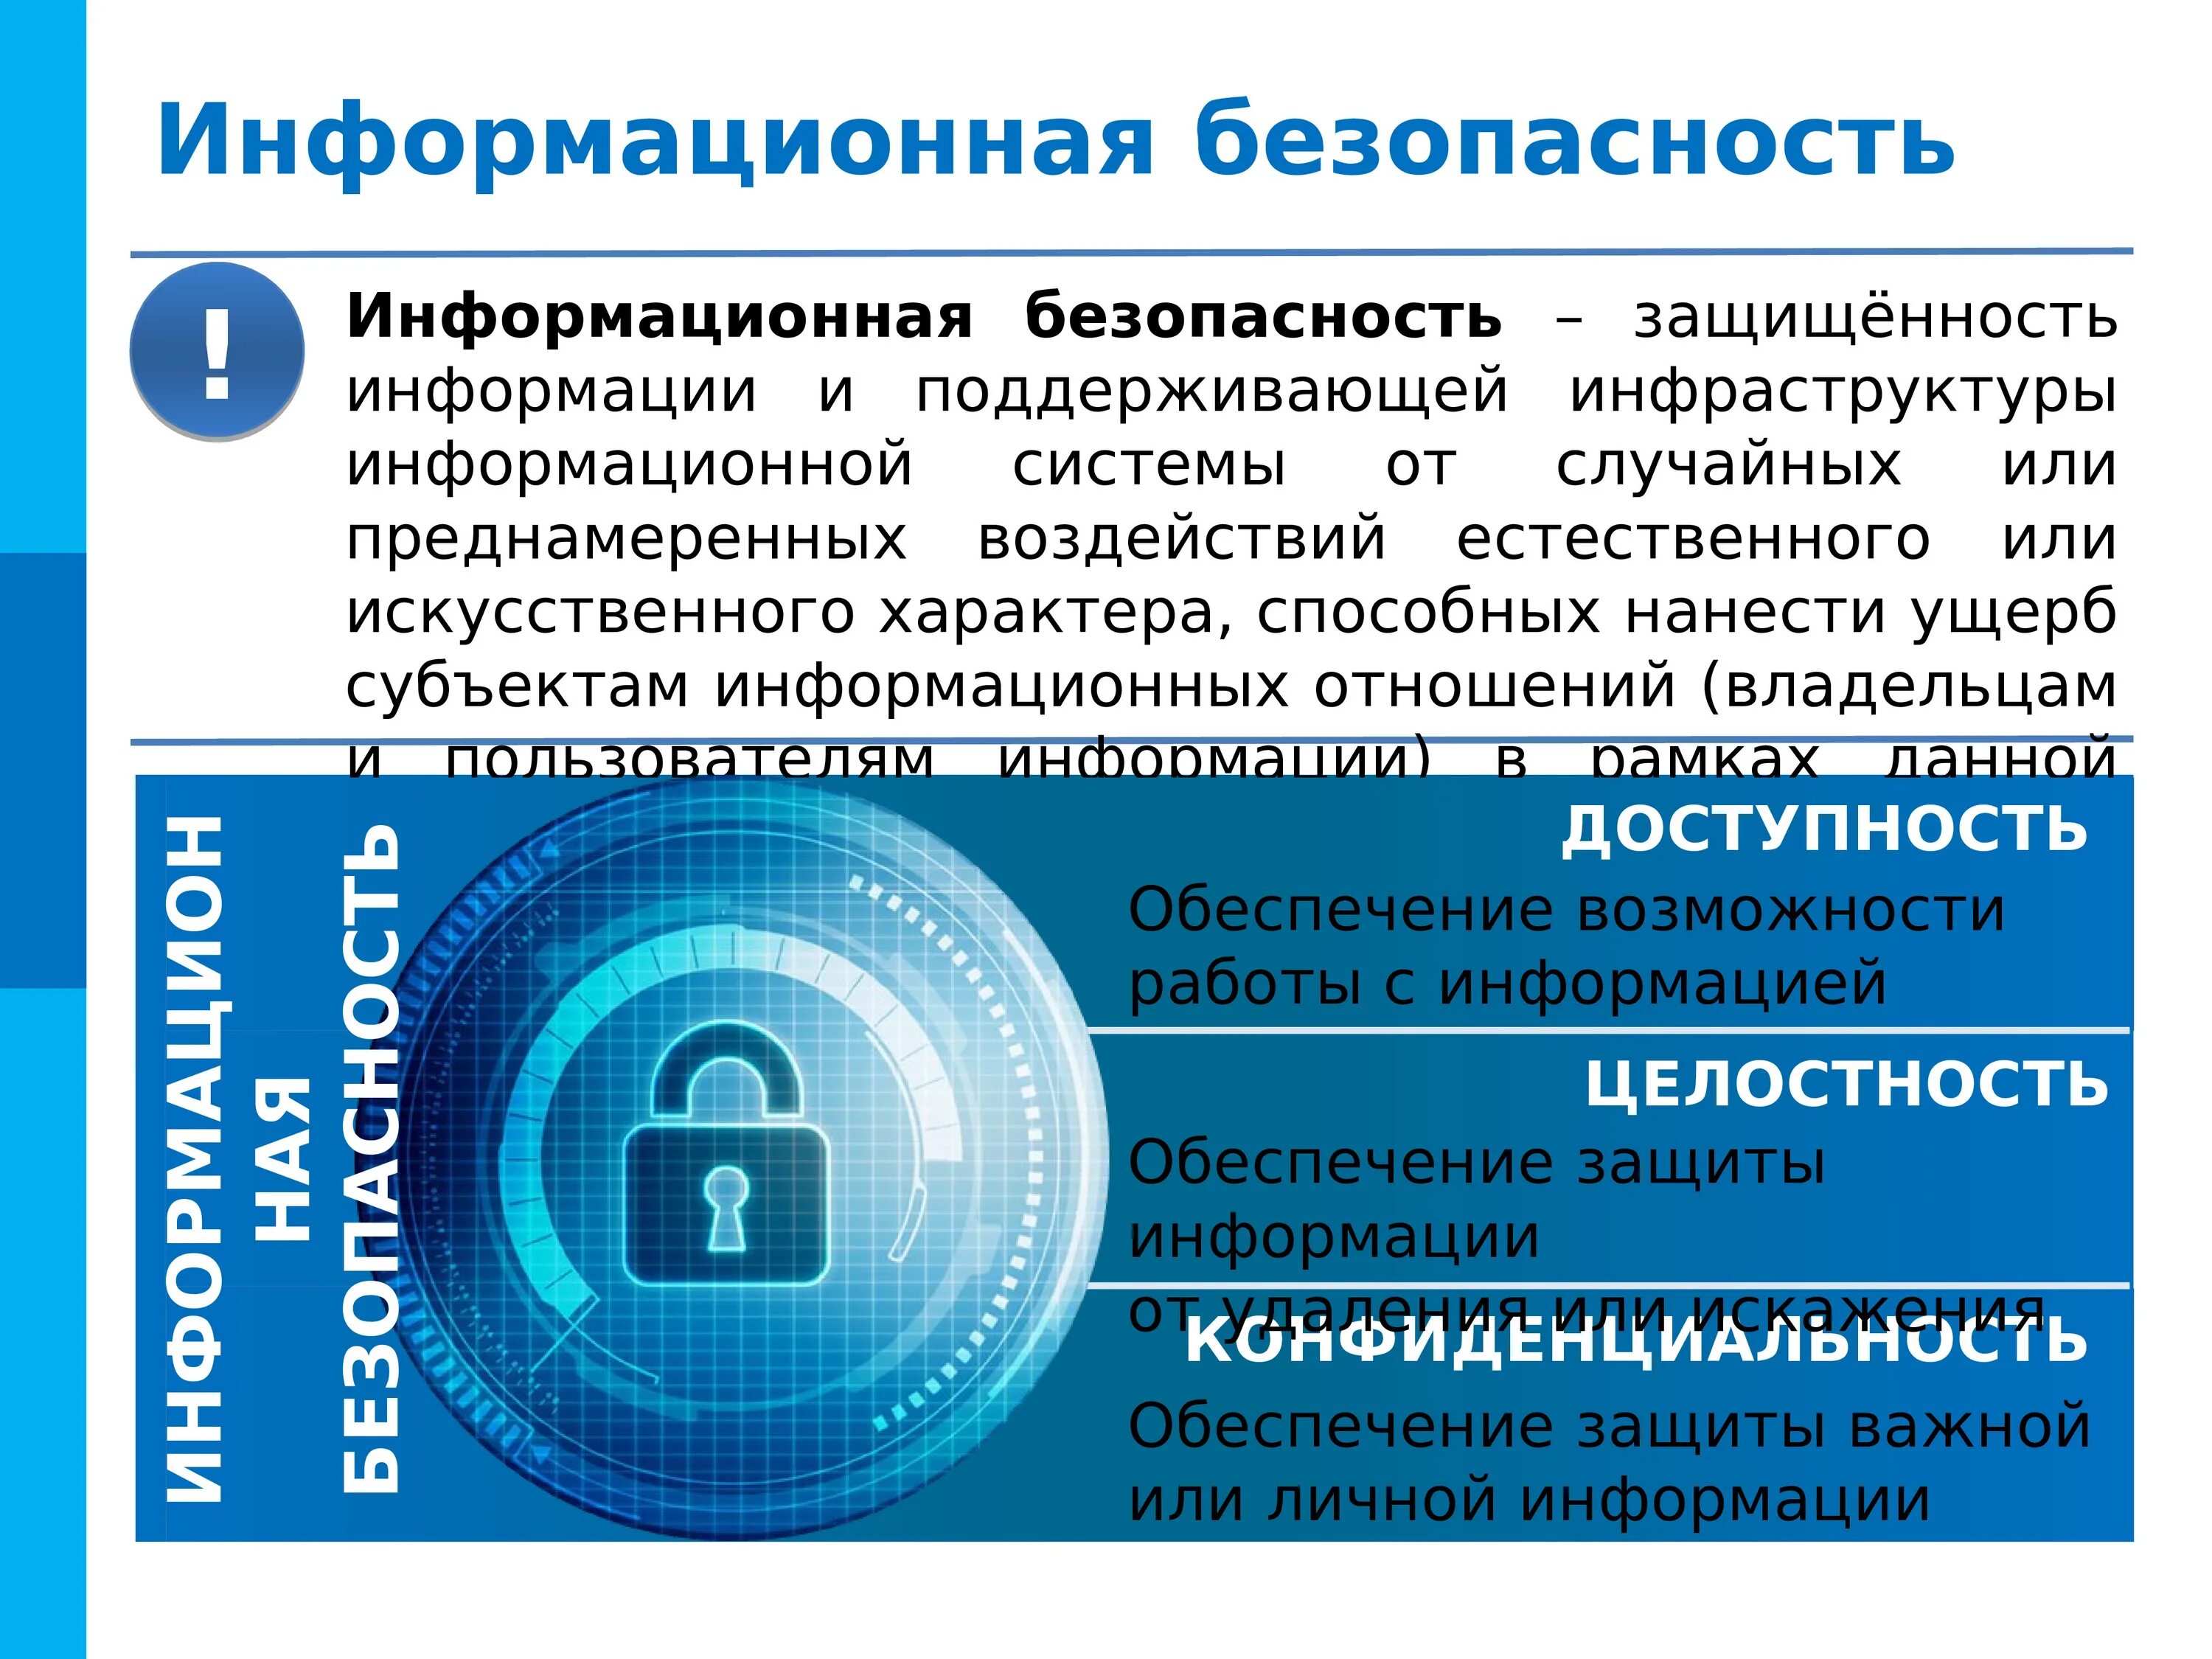 Информационная безопасность и защита информации